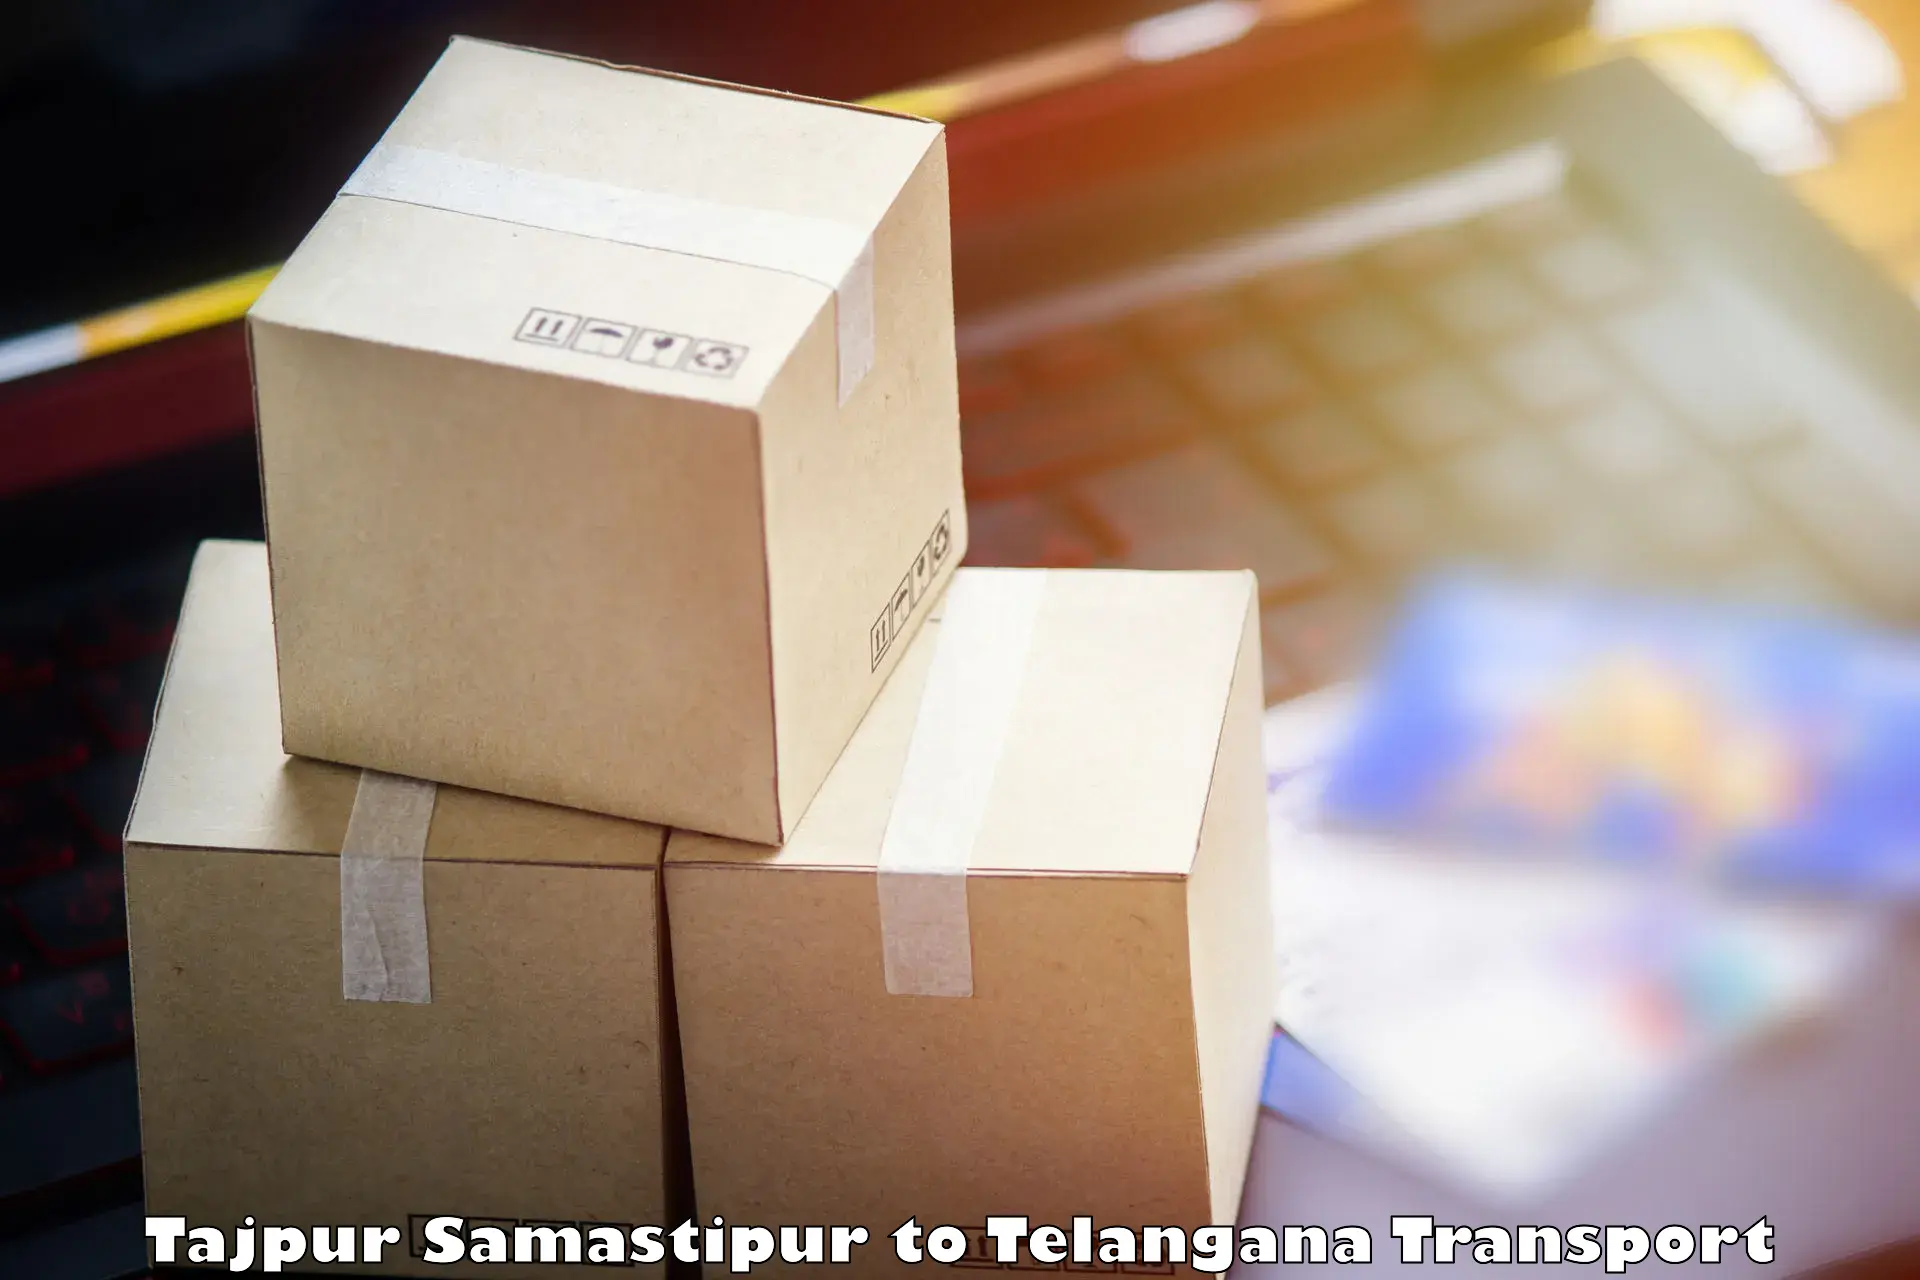 Two wheeler parcel service Tajpur Samastipur to Jannaram